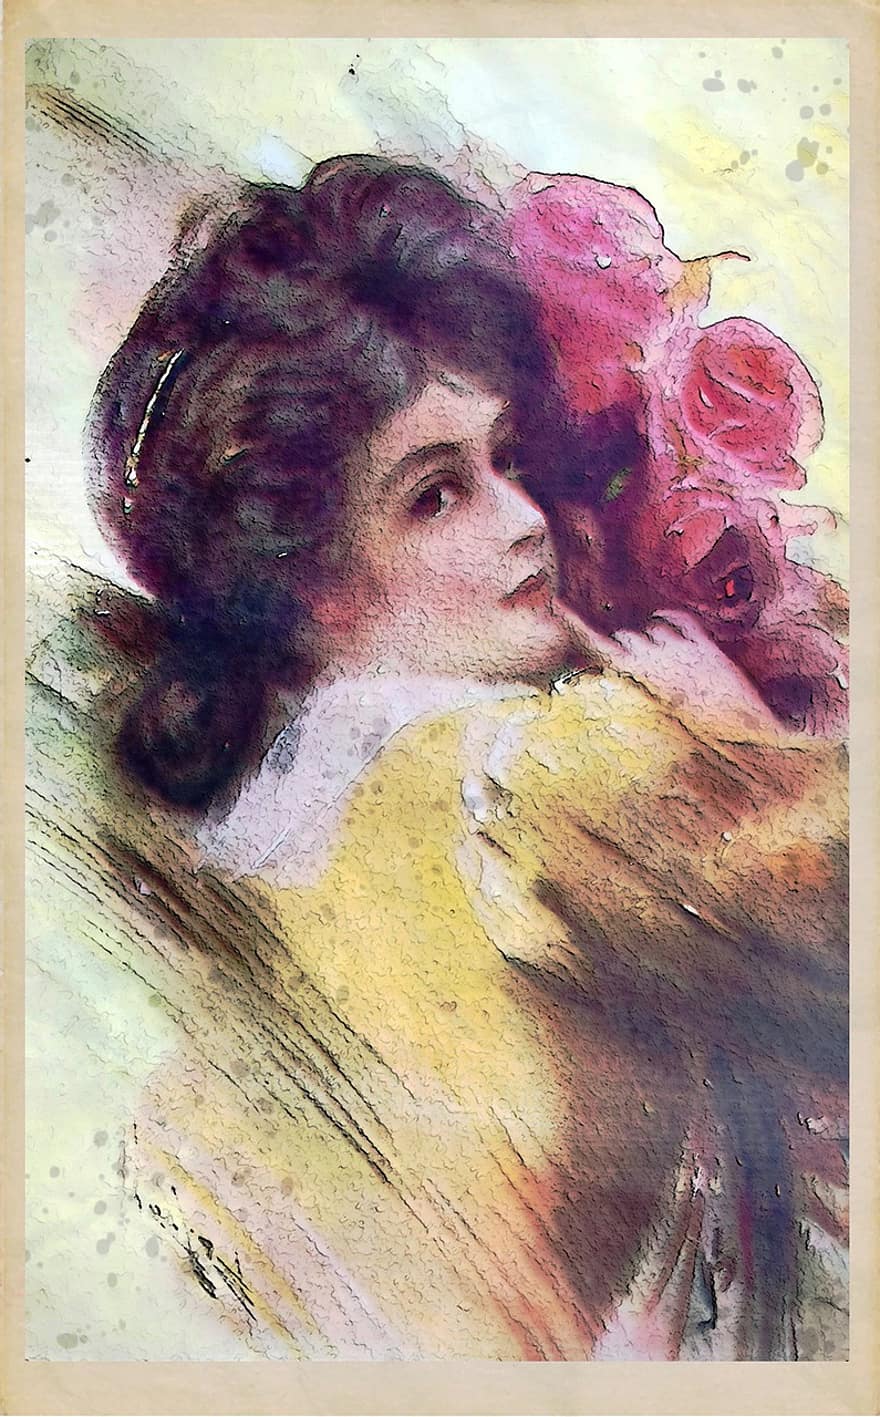 Μυστικά γύρω στο 1908, νέος, κυρία, θηλυκός, λουλούδι, πολύχρωμα, Ανθρωποι, πρόσωπο, πορτρέτο, κορίτσι, γυναίκα